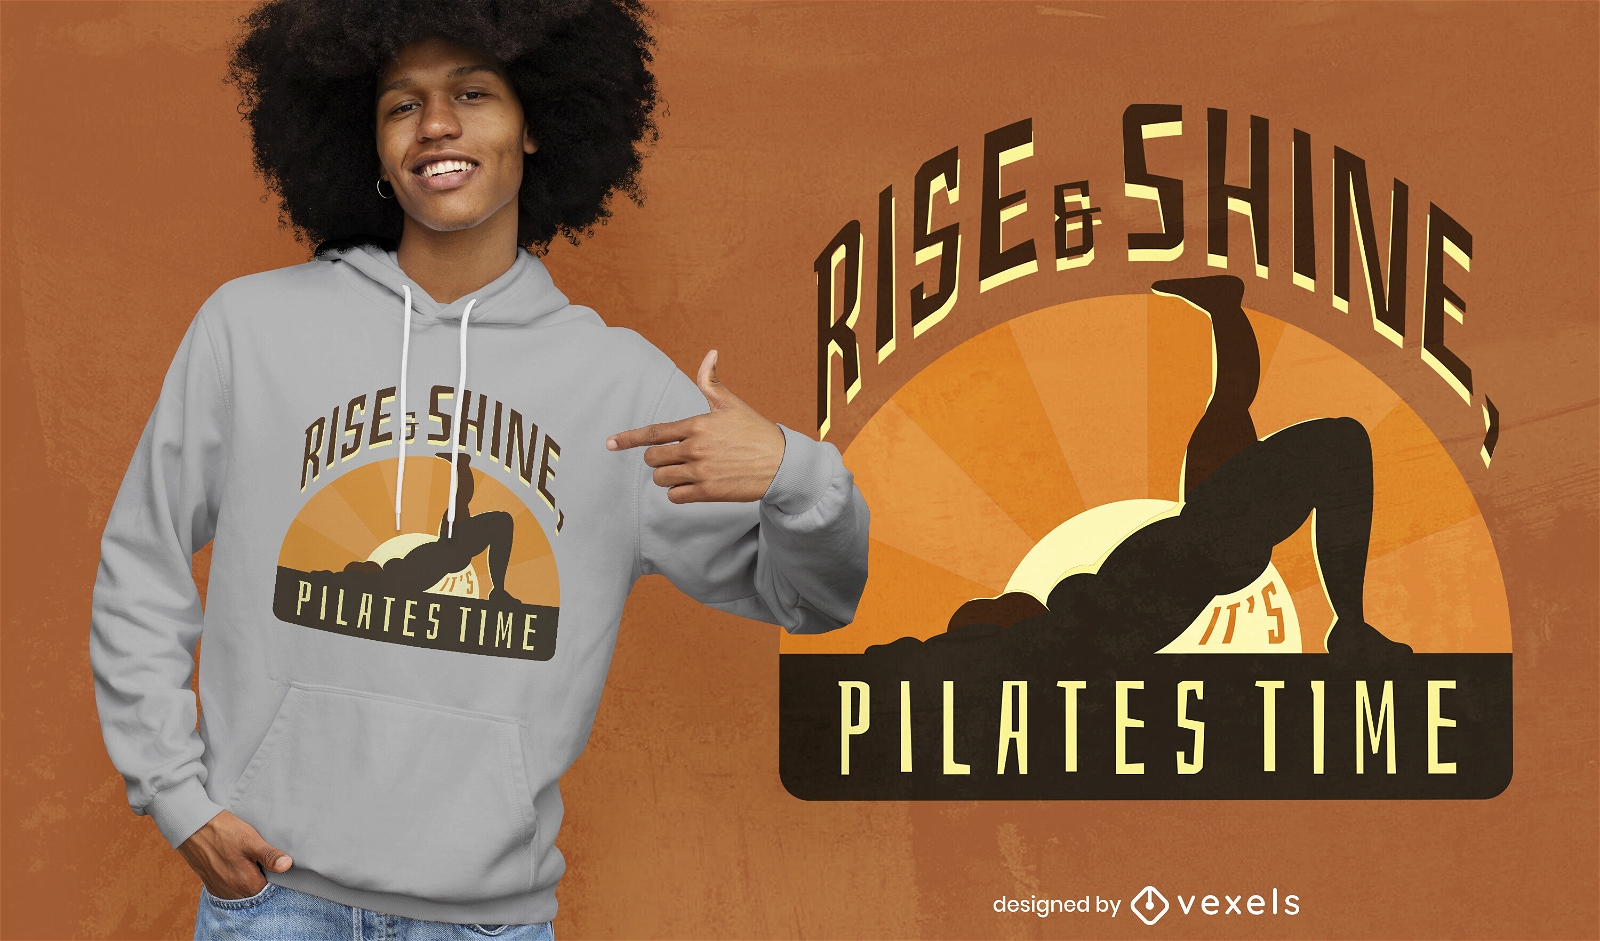 Rise & shine pilates cita diseño de camiseta